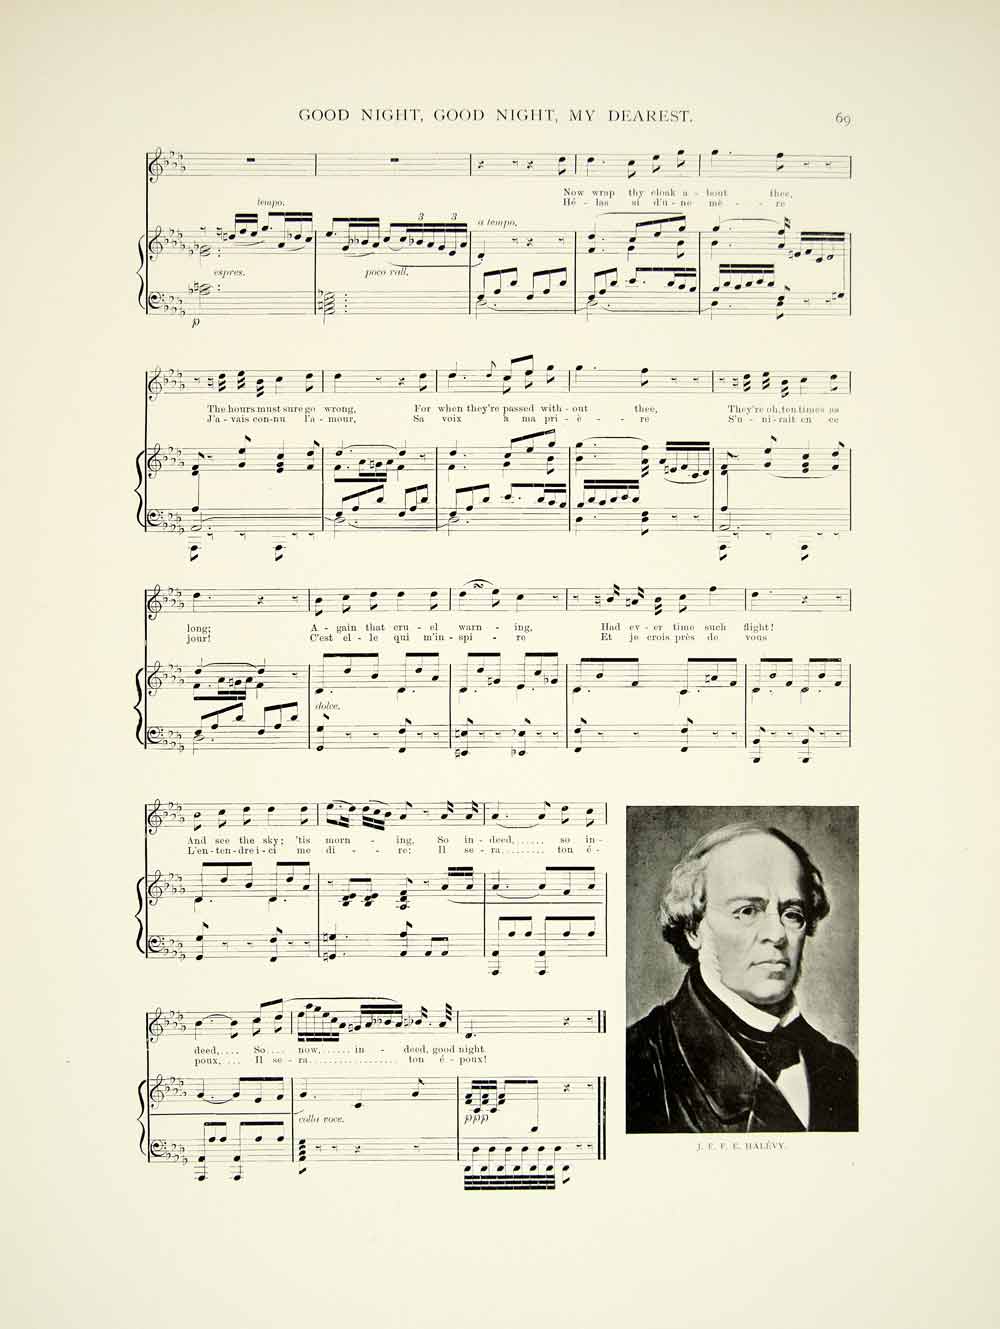 1895 Print Sheet Music Good Night My Dearest Opera La Juive Fromental Halevy